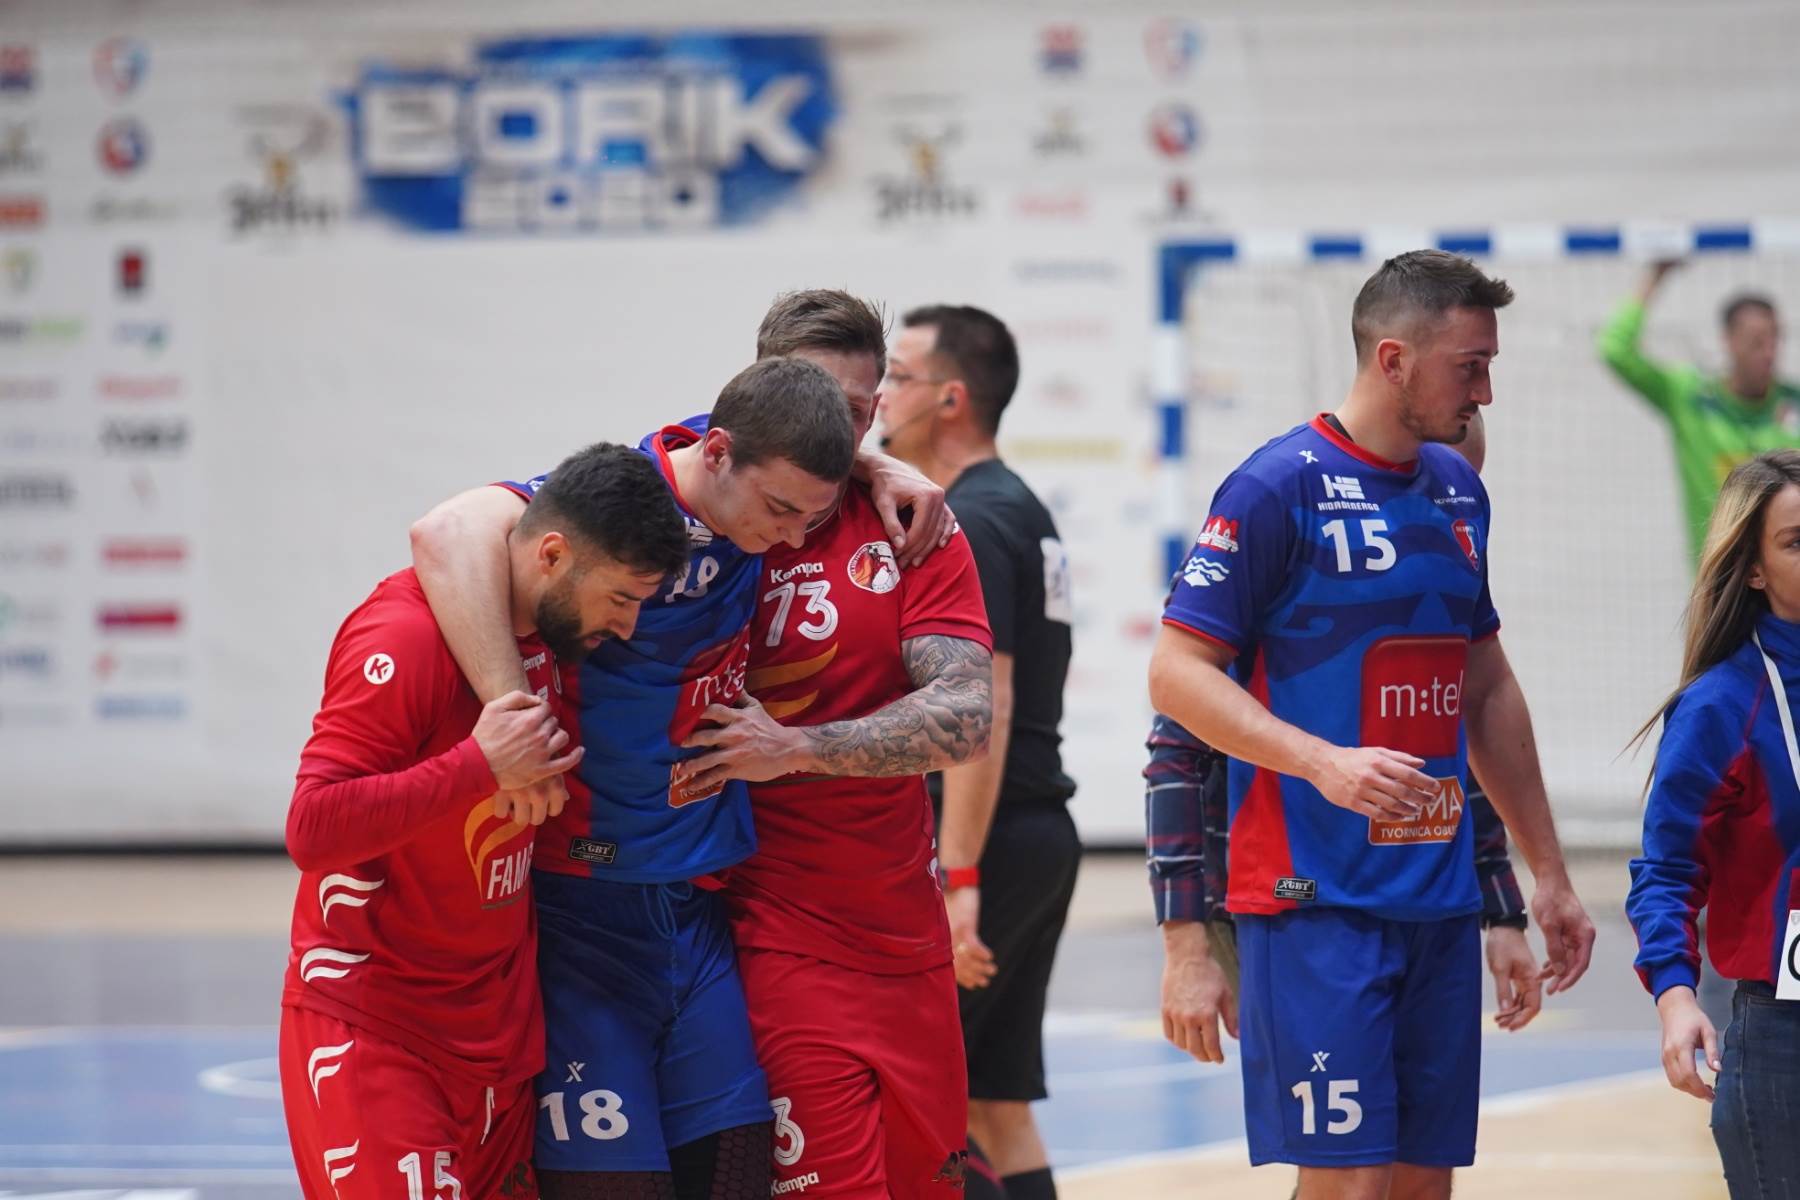  Rukomet EHF Evropski kup Borac m:tel Besa UŽIVO 